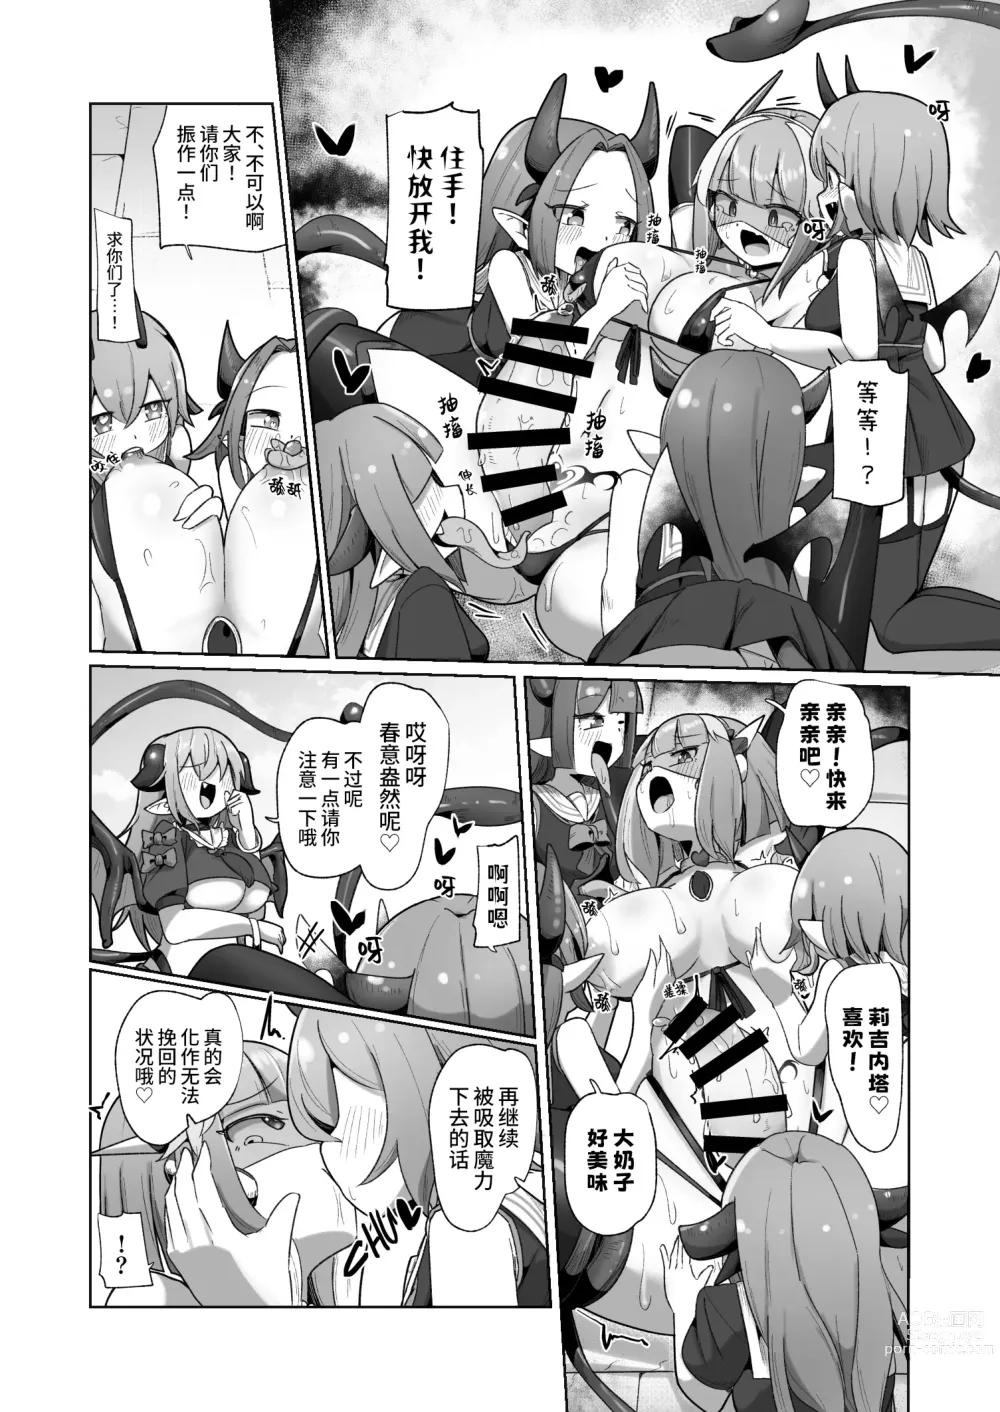 Page 26 of doujinshi 被本该守护的同伴侵犯的这种感觉怎么样啊(笑)??